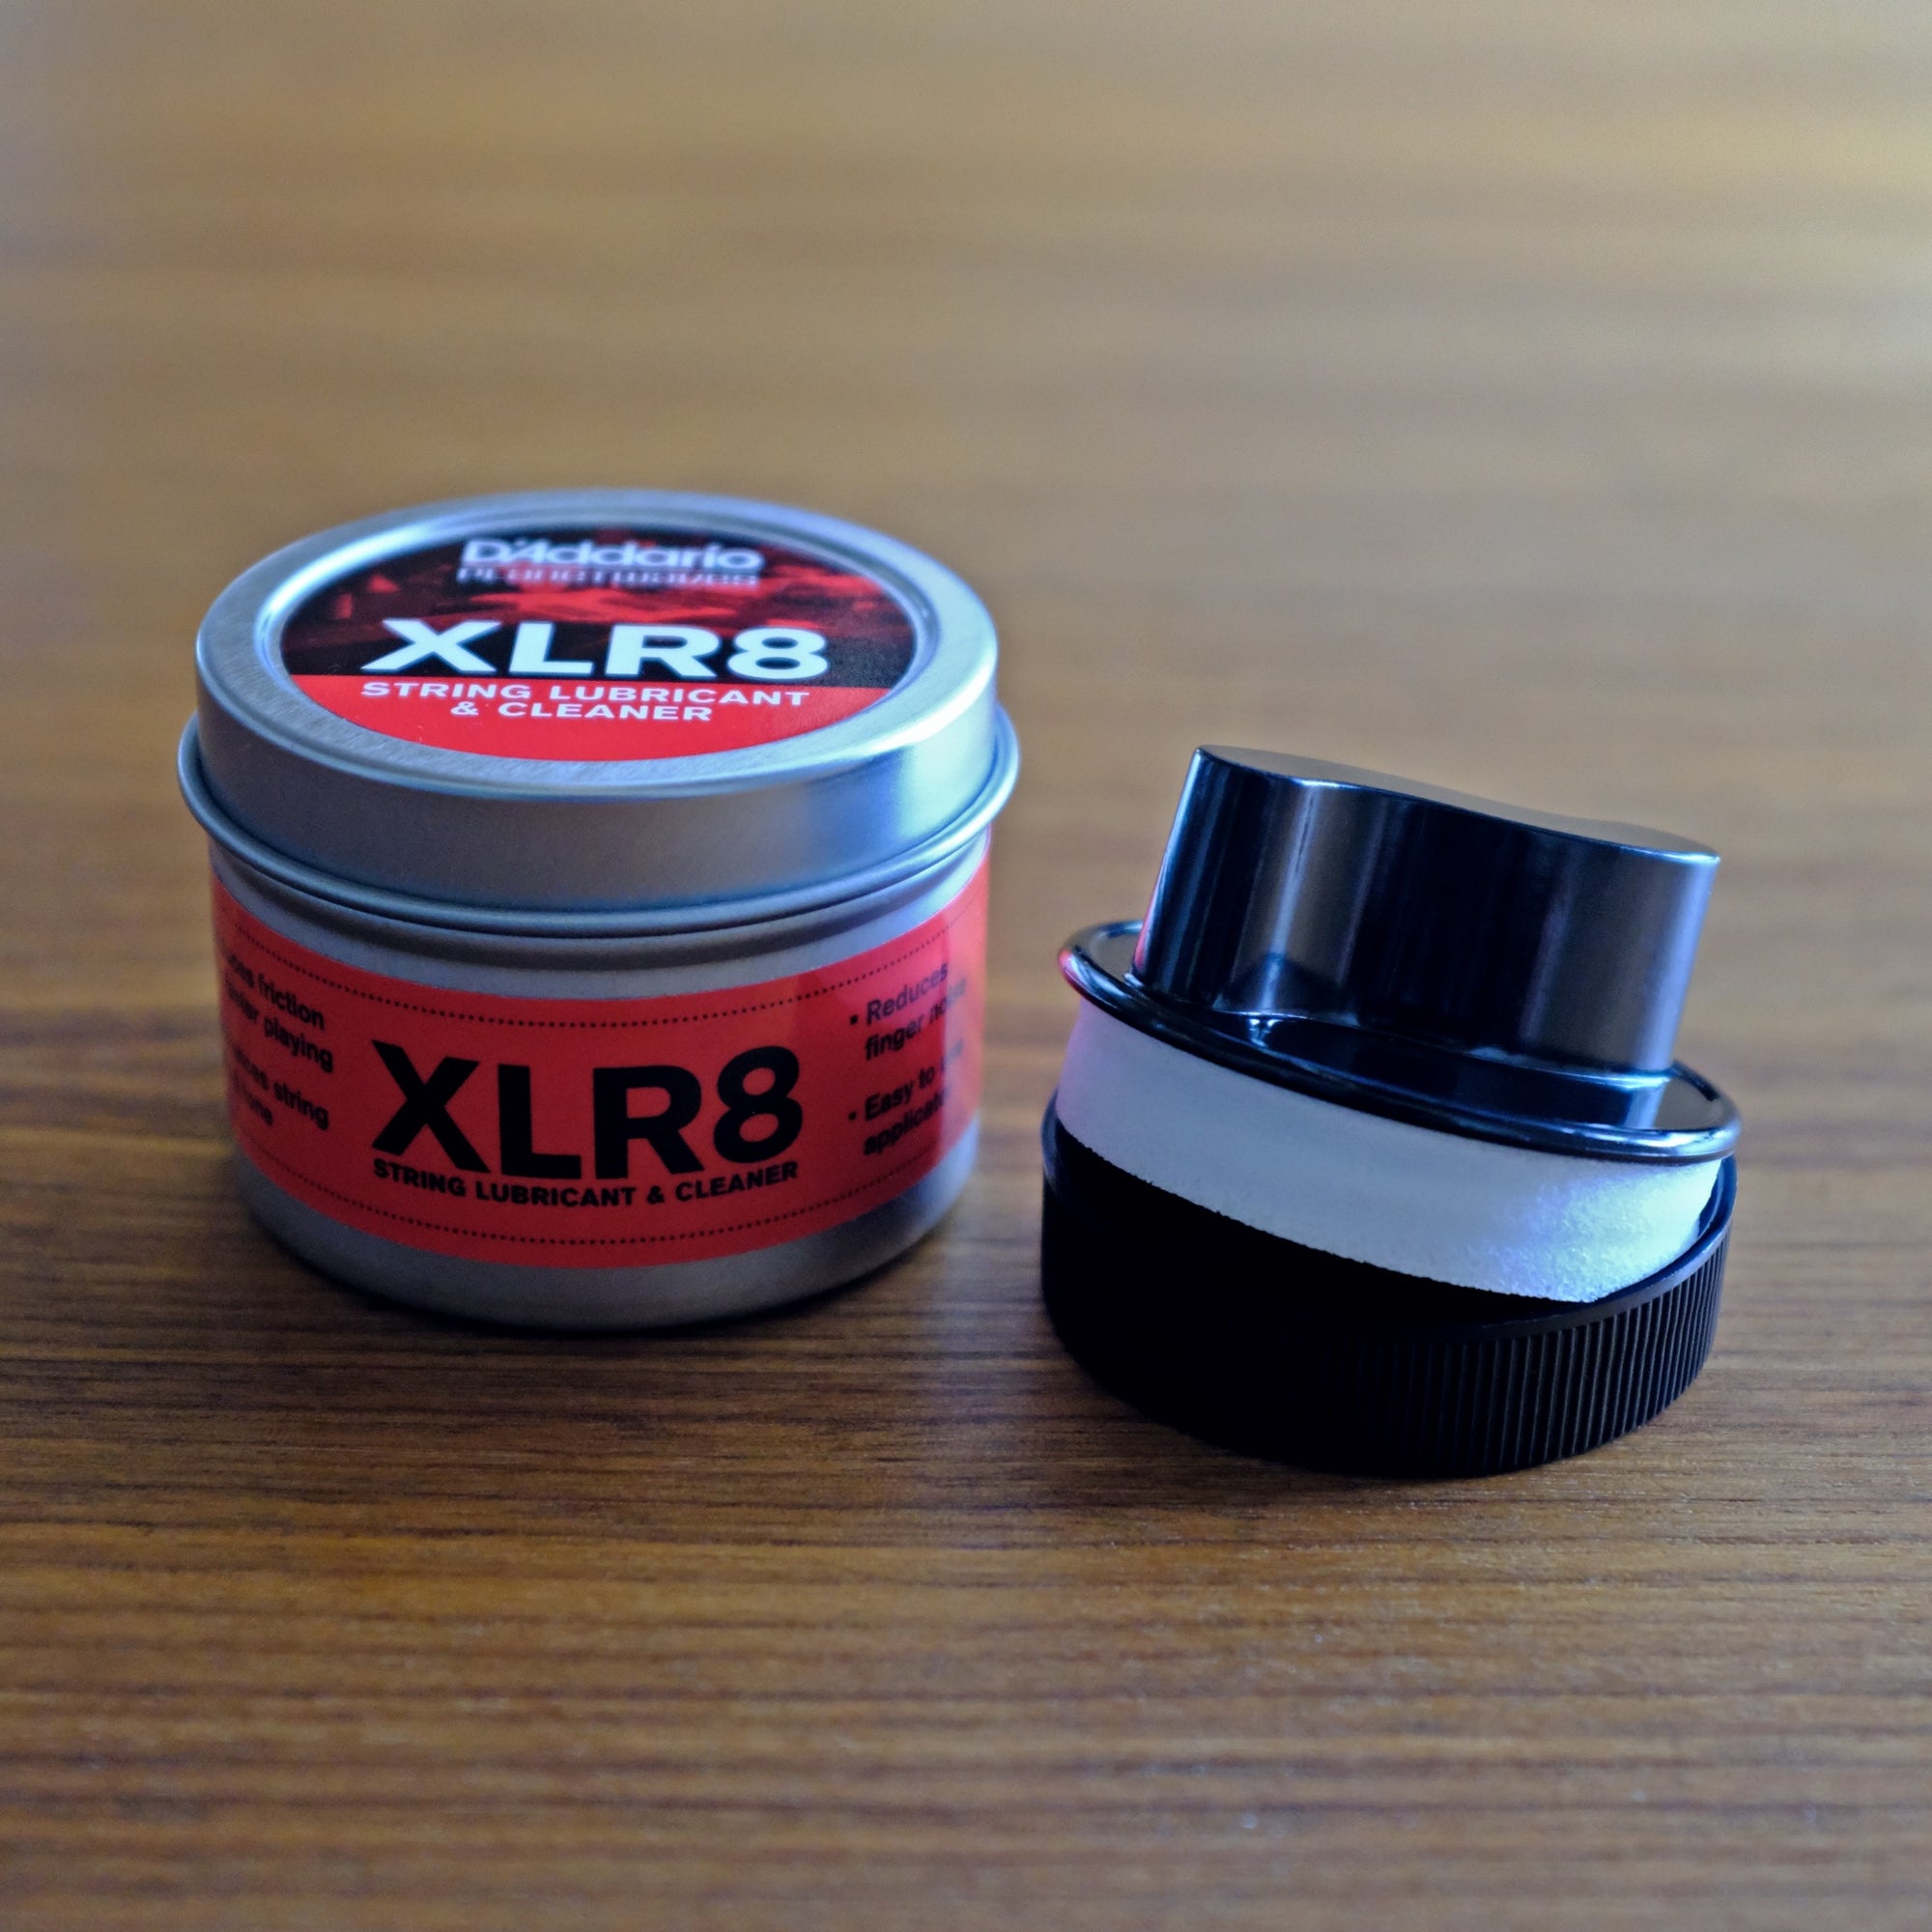 D'Addario XLR8 String Cleaner & Lubricant